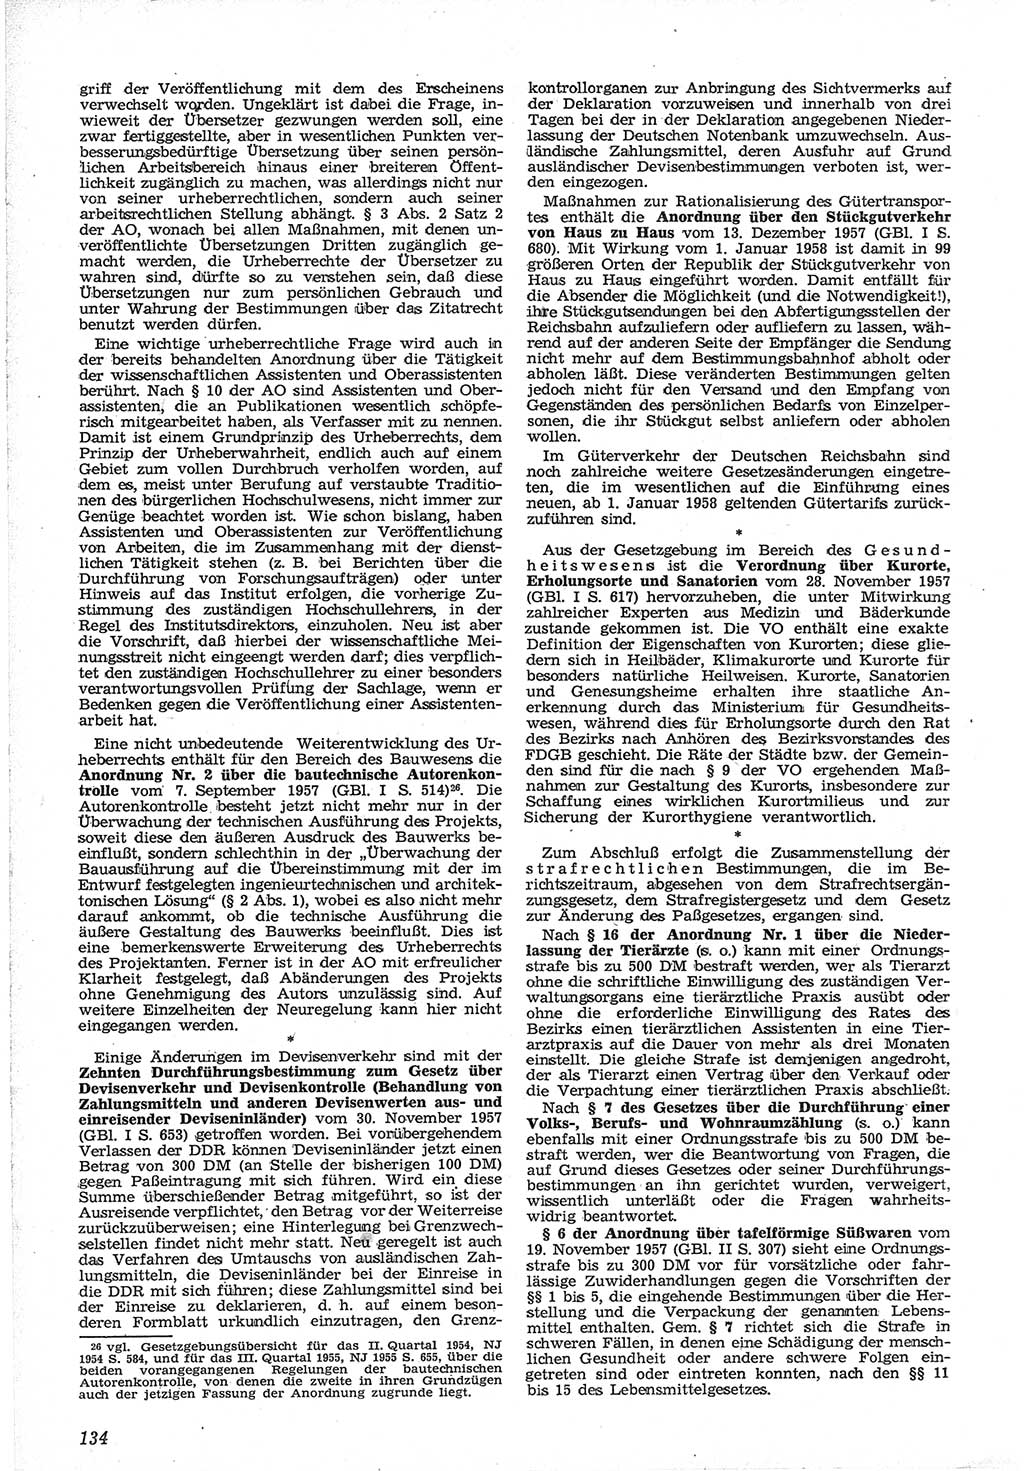 Neue Justiz (NJ), Zeitschrift für Recht und Rechtswissenschaft [Deutsche Demokratische Republik (DDR)], 12. Jahrgang 1958, Seite 134 (NJ DDR 1958, S. 134)